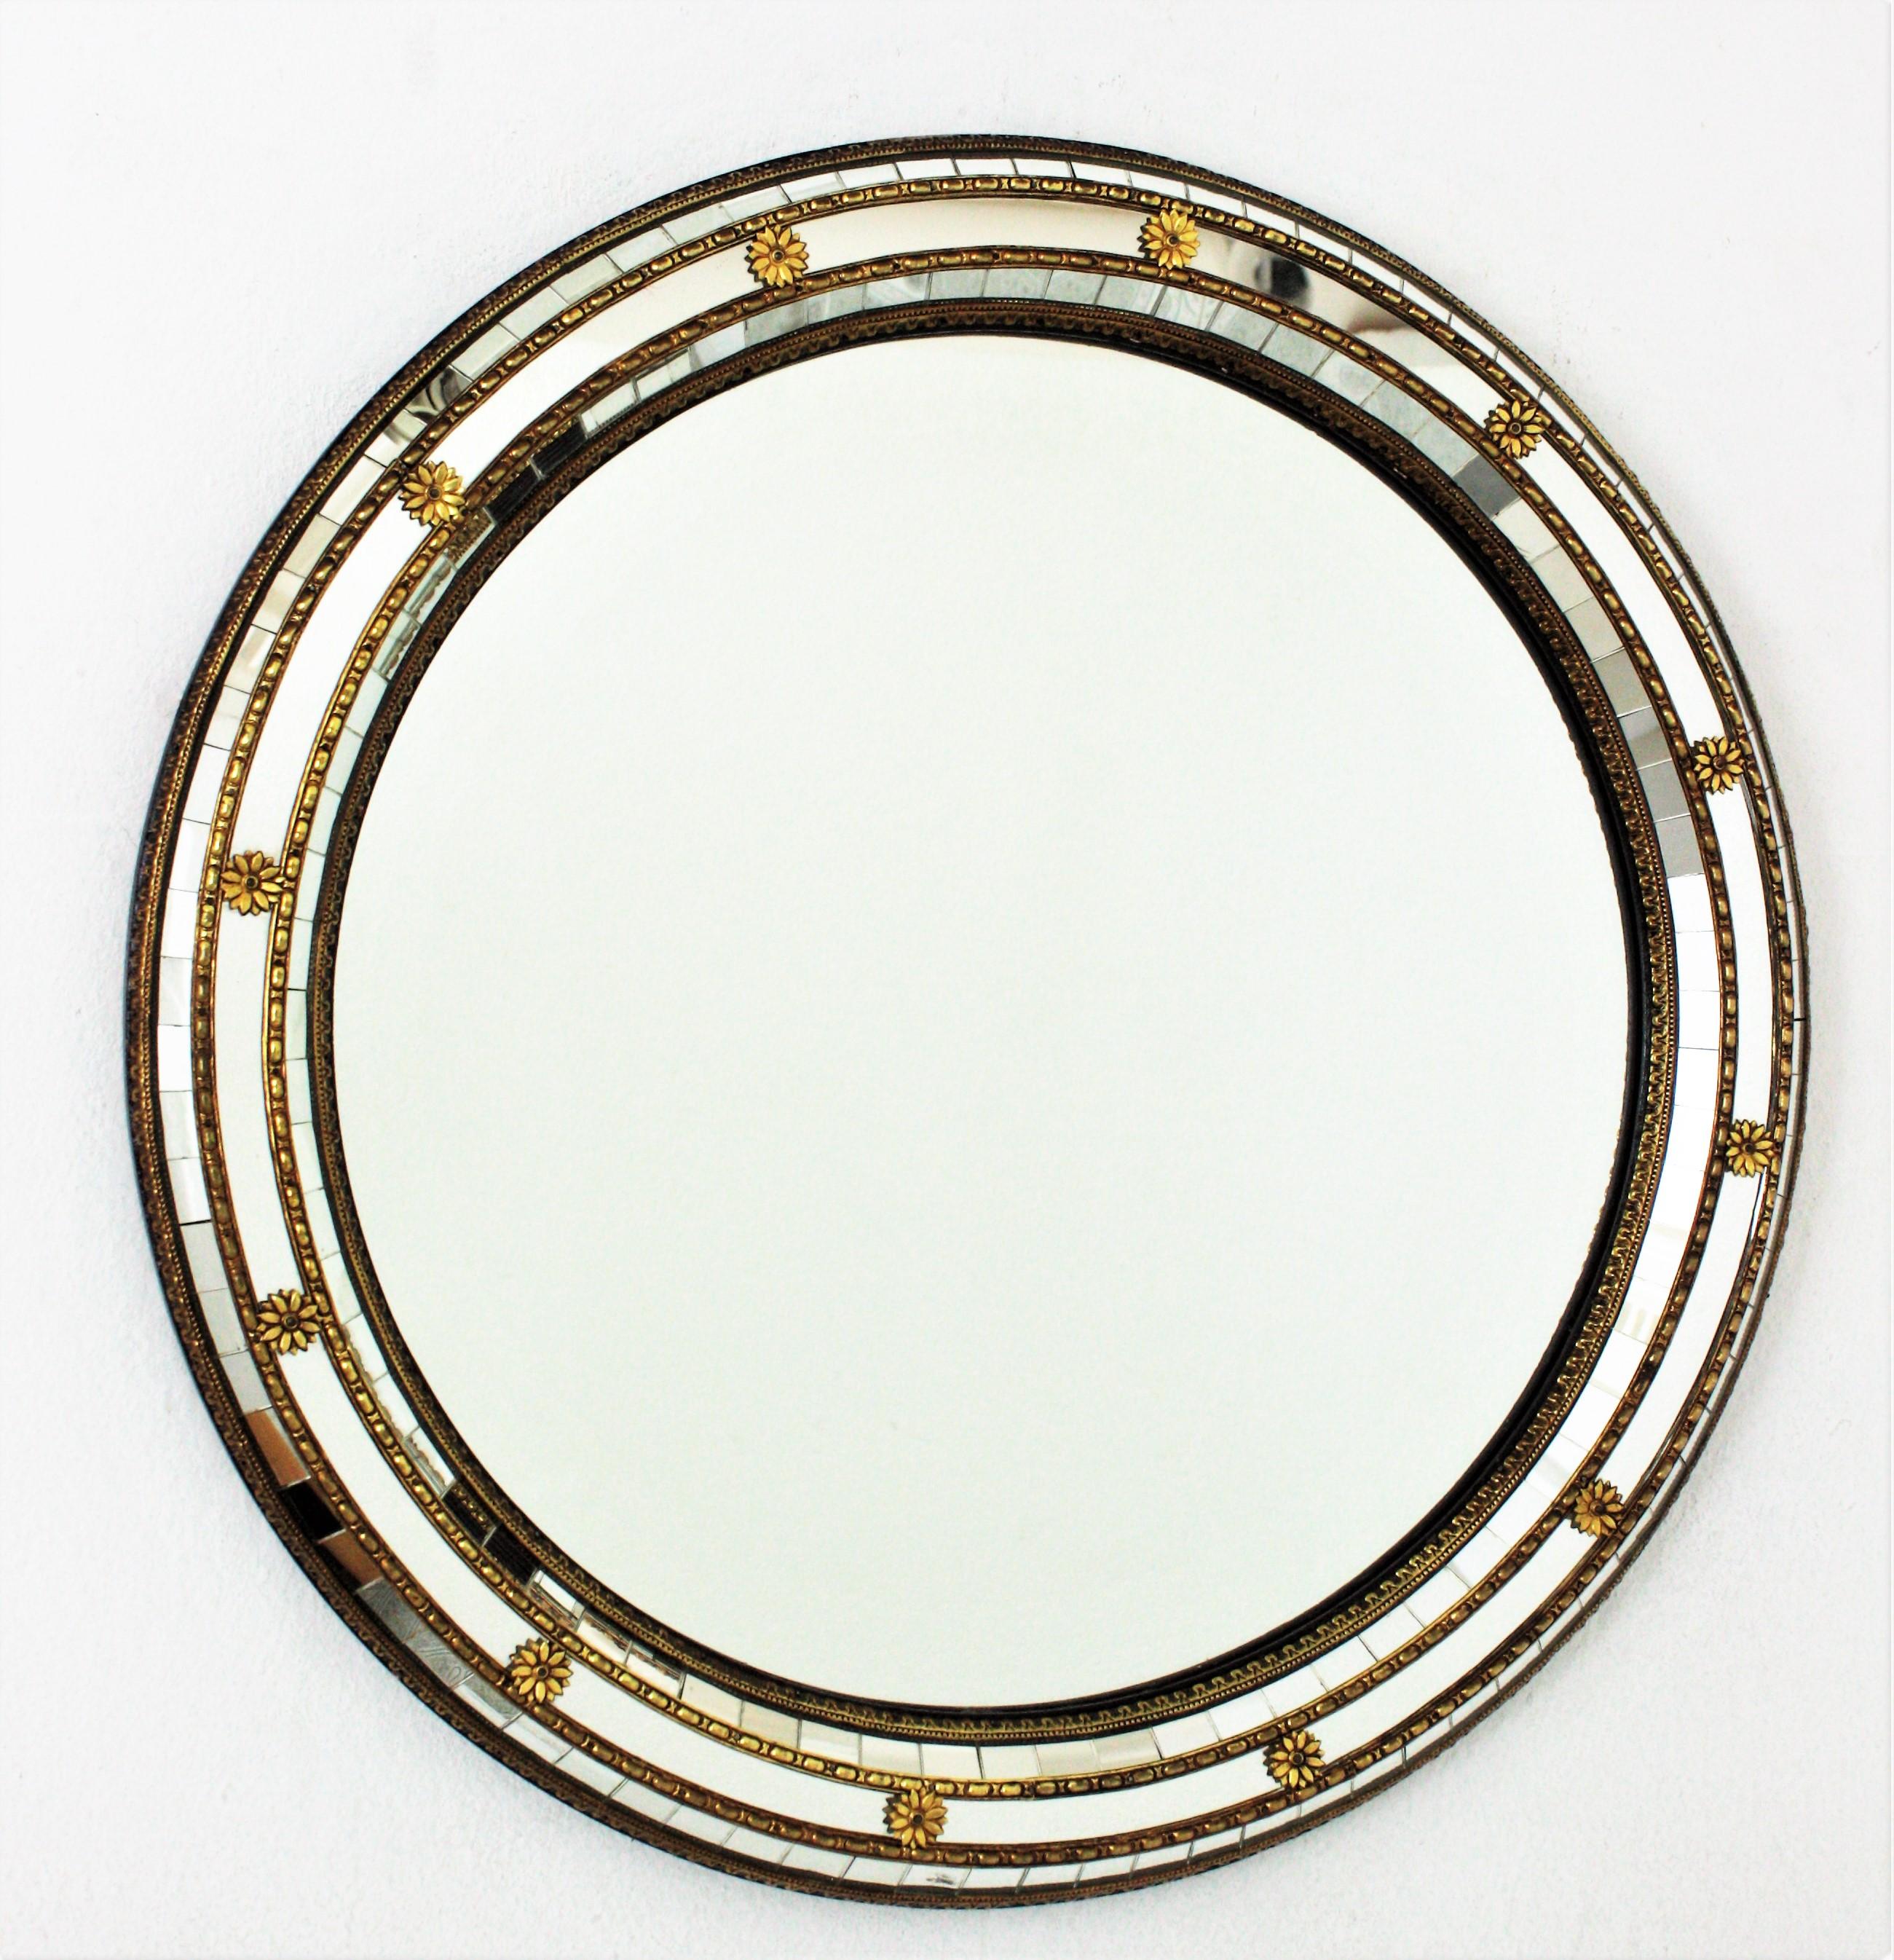 Runder Wandspiegel im venezianischen Stil mit Messingakzenten, Spanien, 1950–1960er Jahre.
Dieser runde Spiegel hat einen dreifachen Spiegelrahmen. Die verspiegelten Paneele sind mit Metallmustern und Blumen geschmückt.
Dieser Wandspiegel eignet